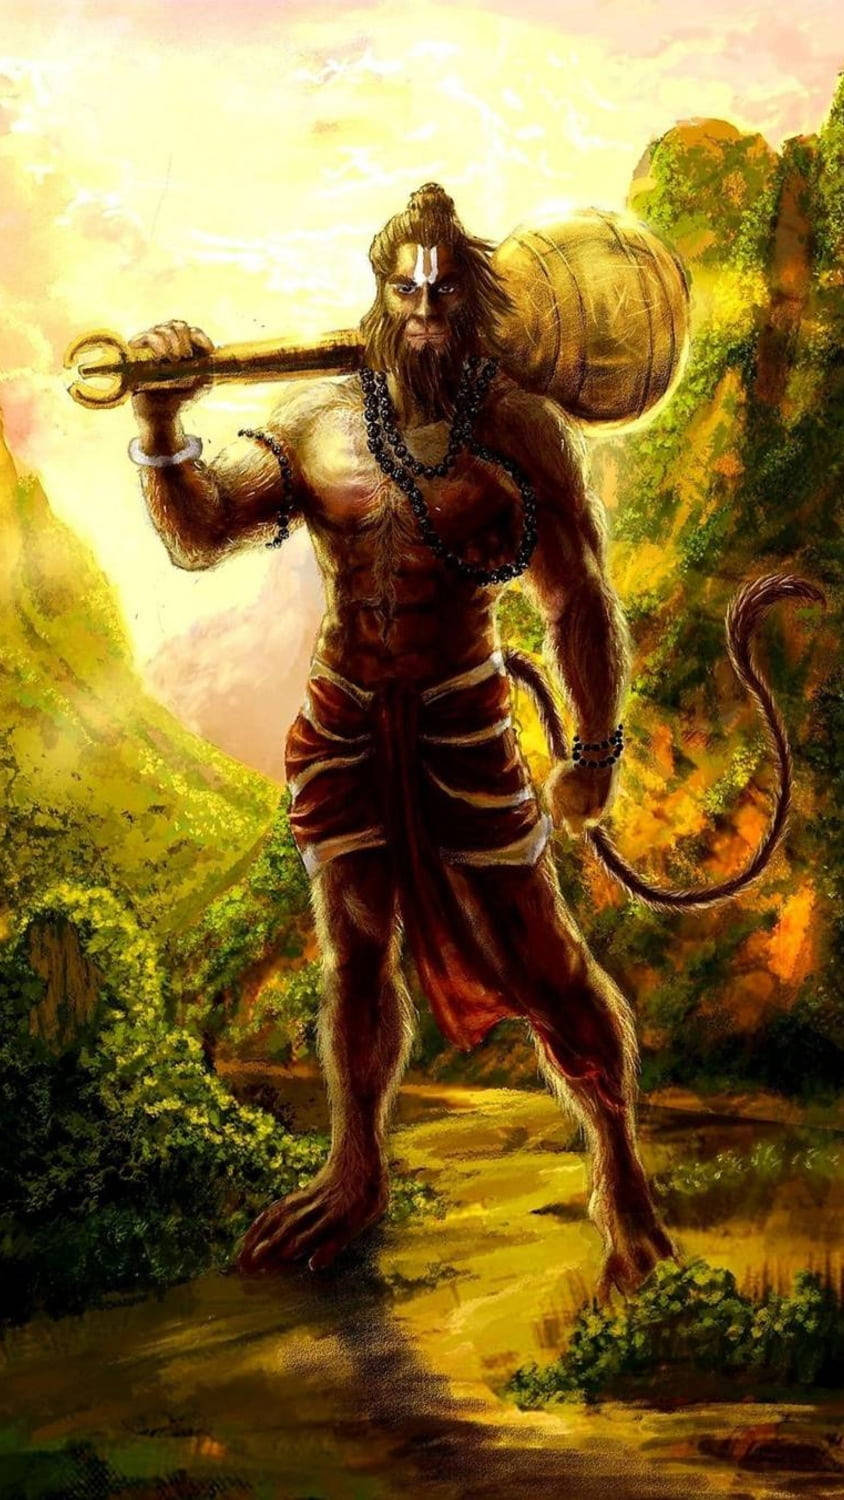 Download Powerful Hindu God Hanuman Phone Wallpaper | Wallpapers.com